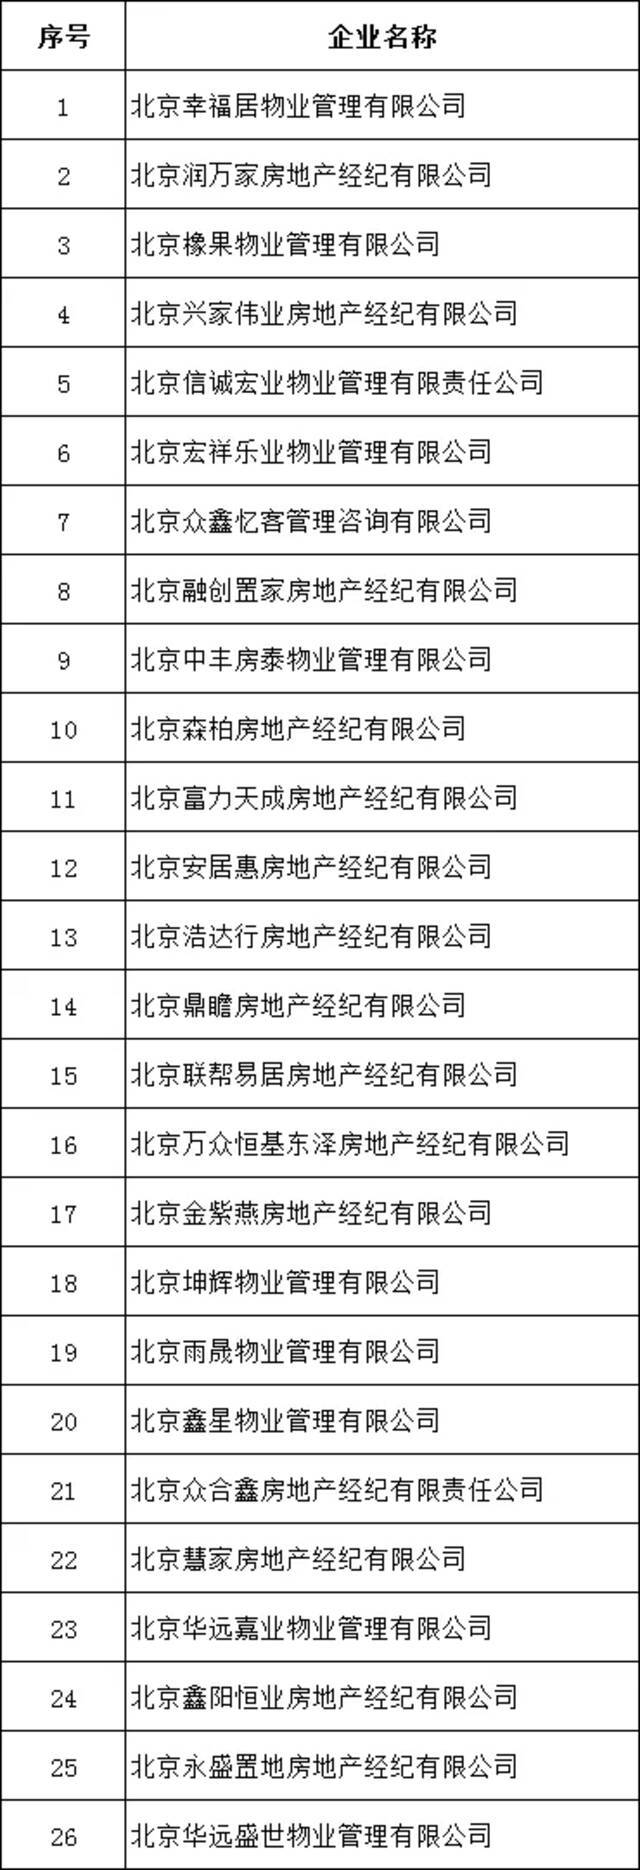 北京严查炒作学区房、违规商改住等 26家机构被查处